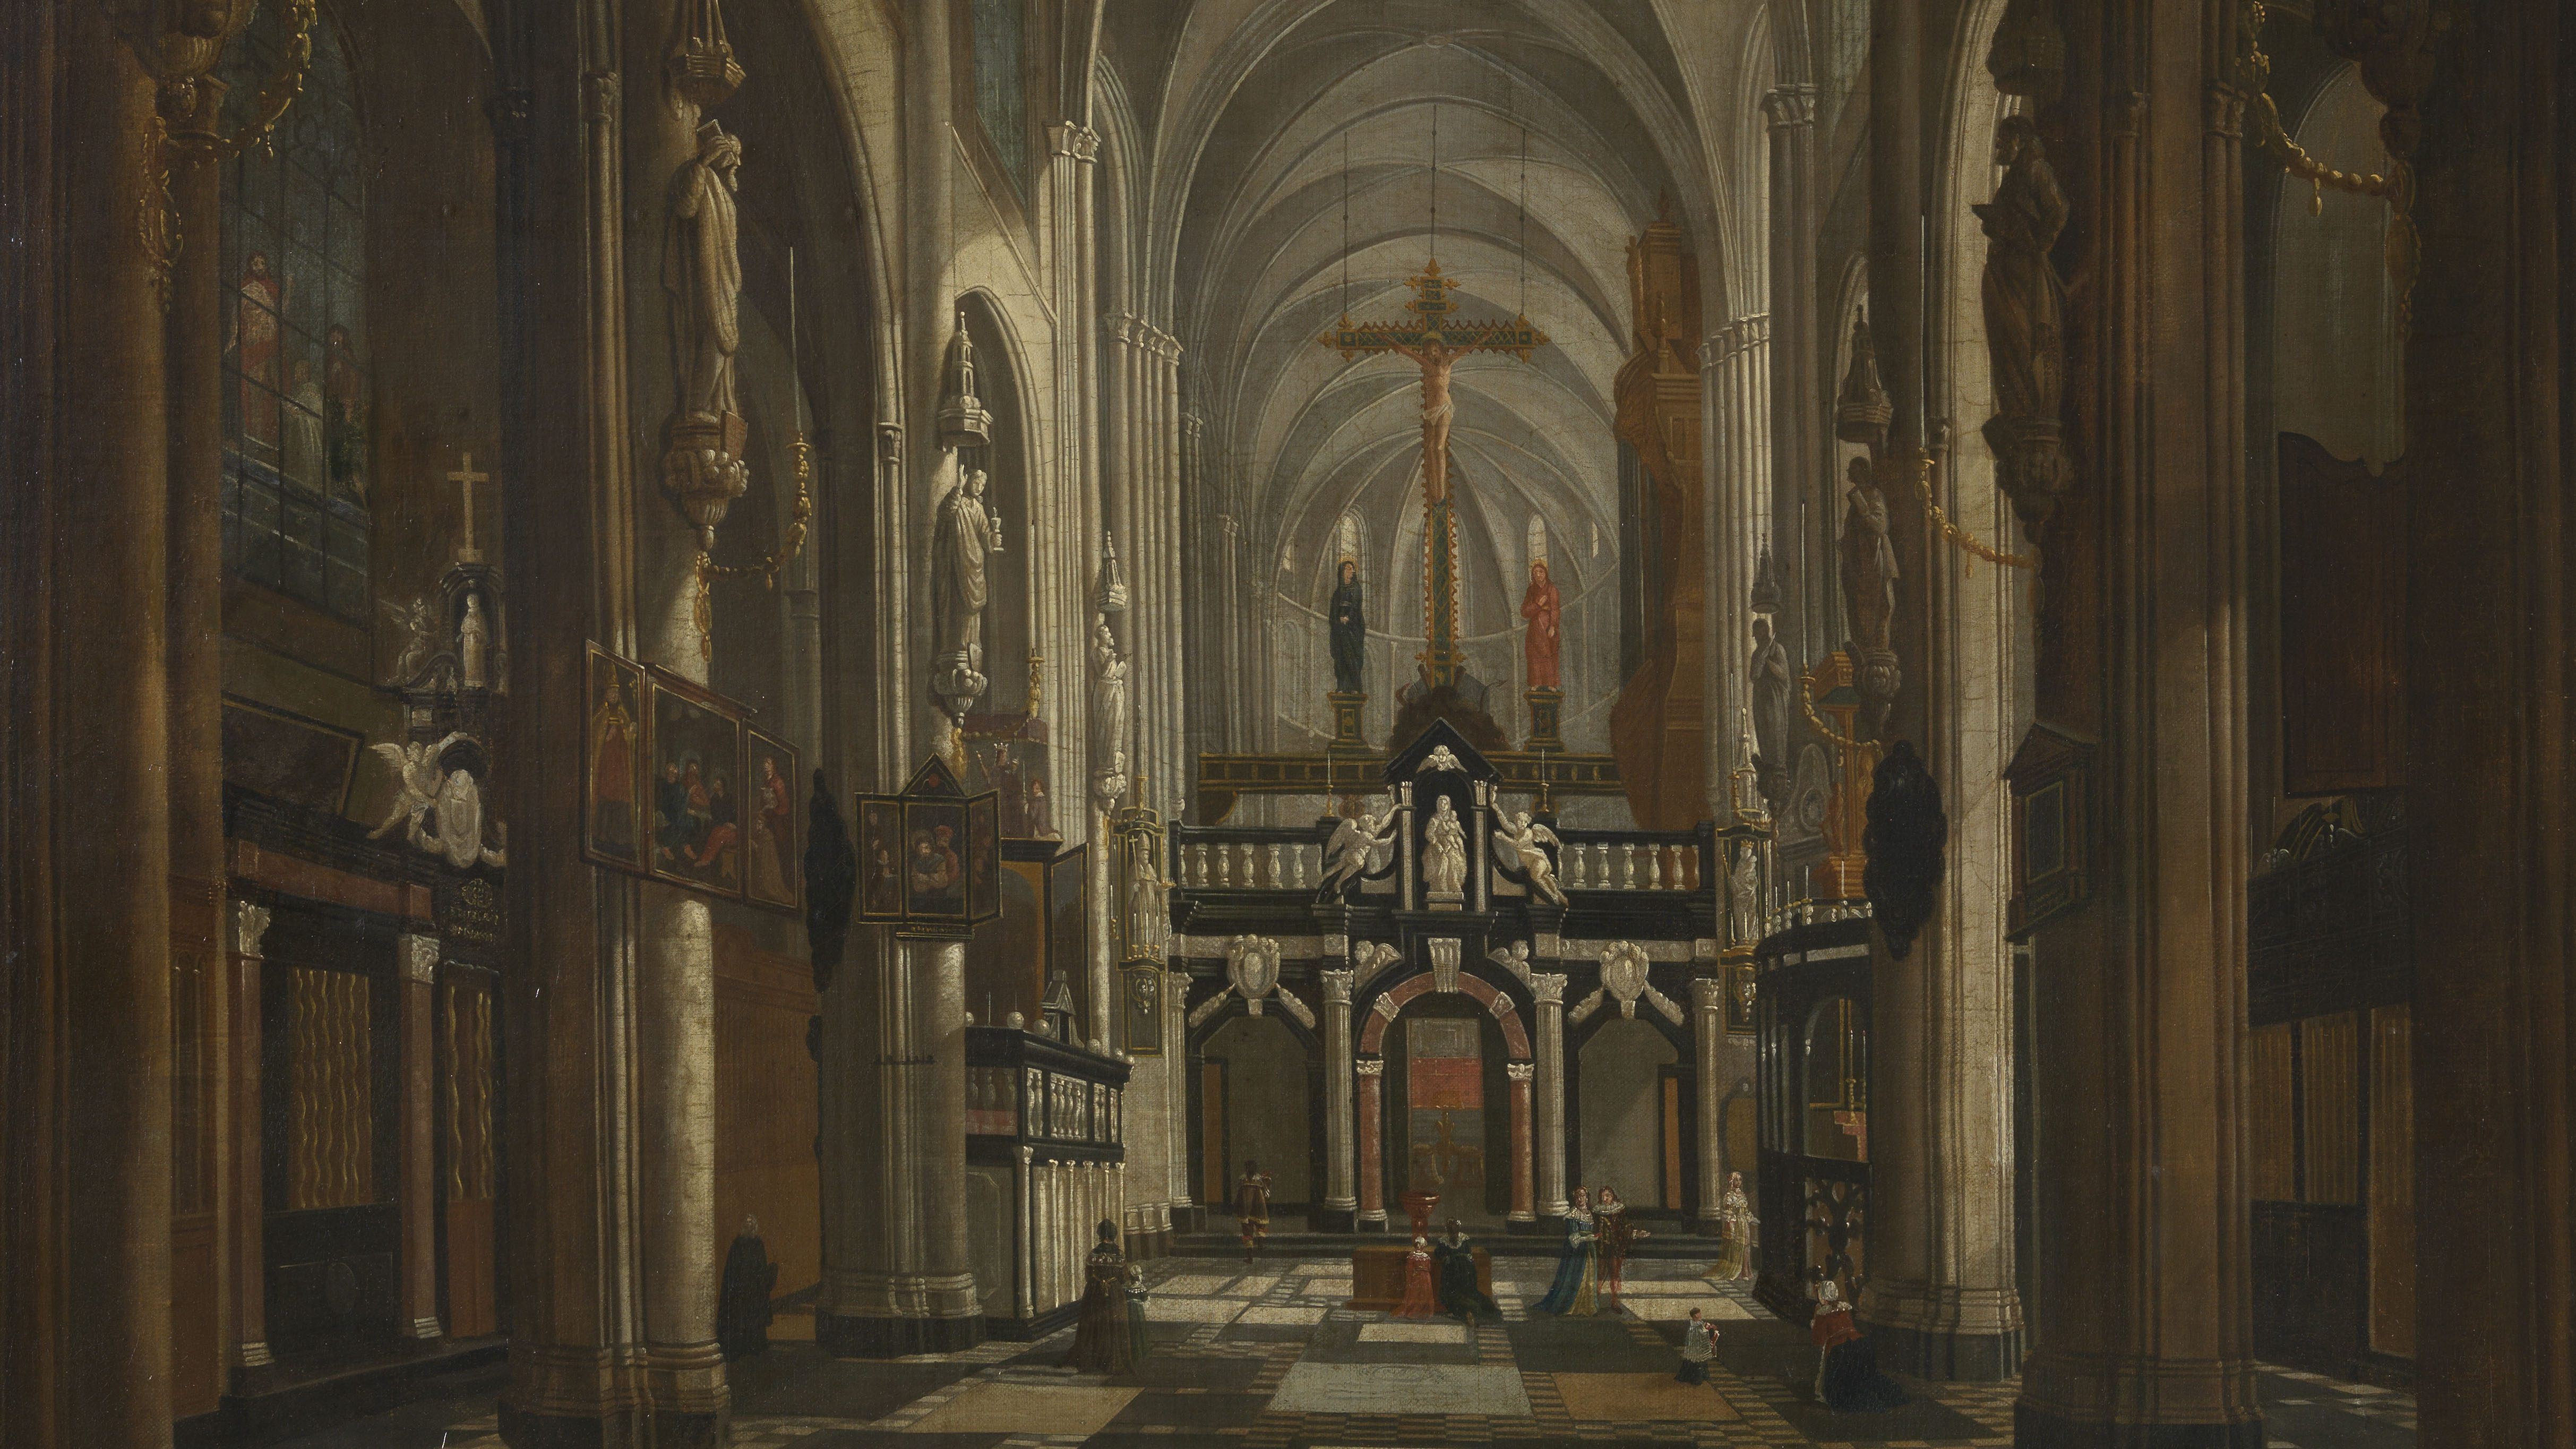 Binnenzicht van de in 1799 gesloopte Sint-Donaaskerk in Brugge. Geschilderd door Jan Baptist van Meunincxhove, circa 1696.